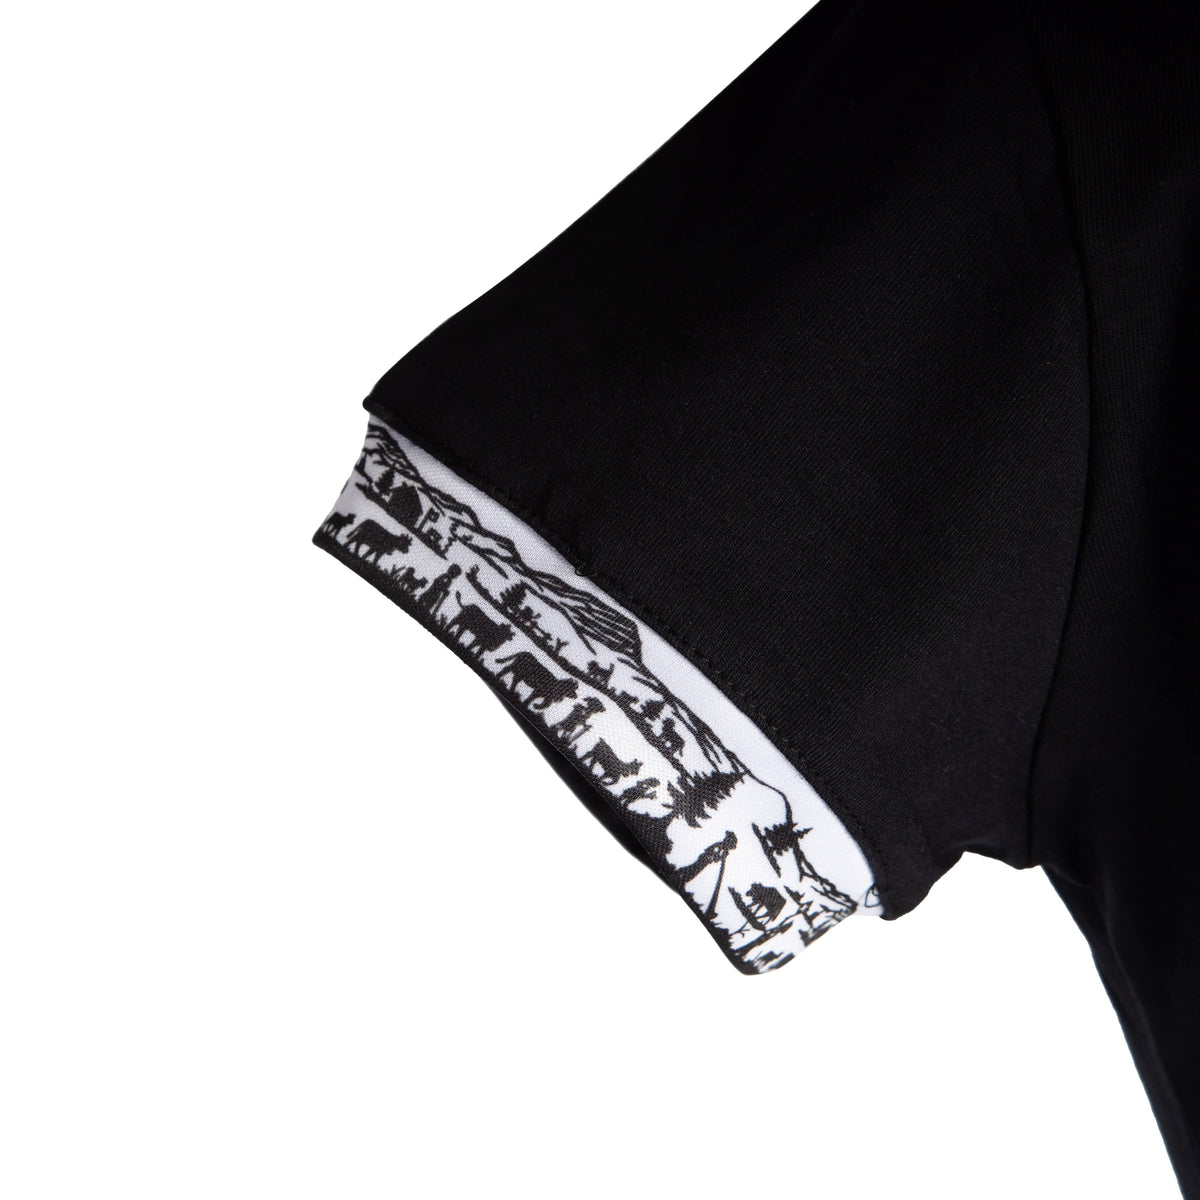 Herren Scherenschnitt Polo-Shirt von Edelvetica, gekennzeichnet durch einzigartige Scherenschnitt-Details am Kragen und den Armabschlüssen. Dieses elegante Polo-Shirt verbindet traditionelle Schweizer Kunst mit modernem Stil und bietet eine stilvolle Option für diverse Anlässe. Perfekt für eine anspruchsvolle Garderobe, die traditionelle Elemente und zeitgenössische Mode vereint.